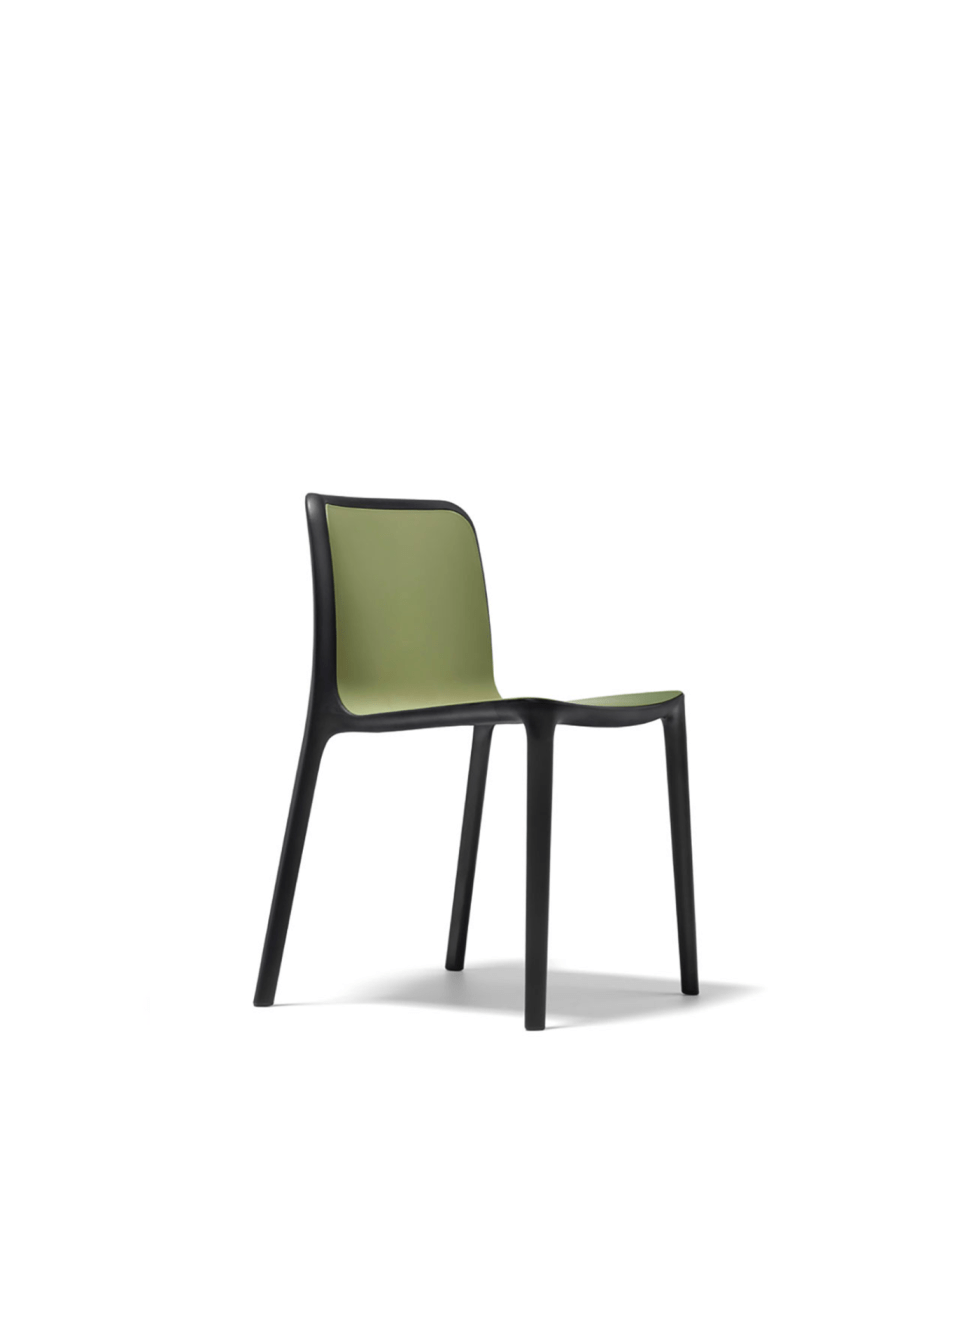 chaise pour collectivité vert chaises pour collectivité vert empilables couleur orange et noir chaises cafétéria, chaises écoles, chaises bibliothèque avec table bois